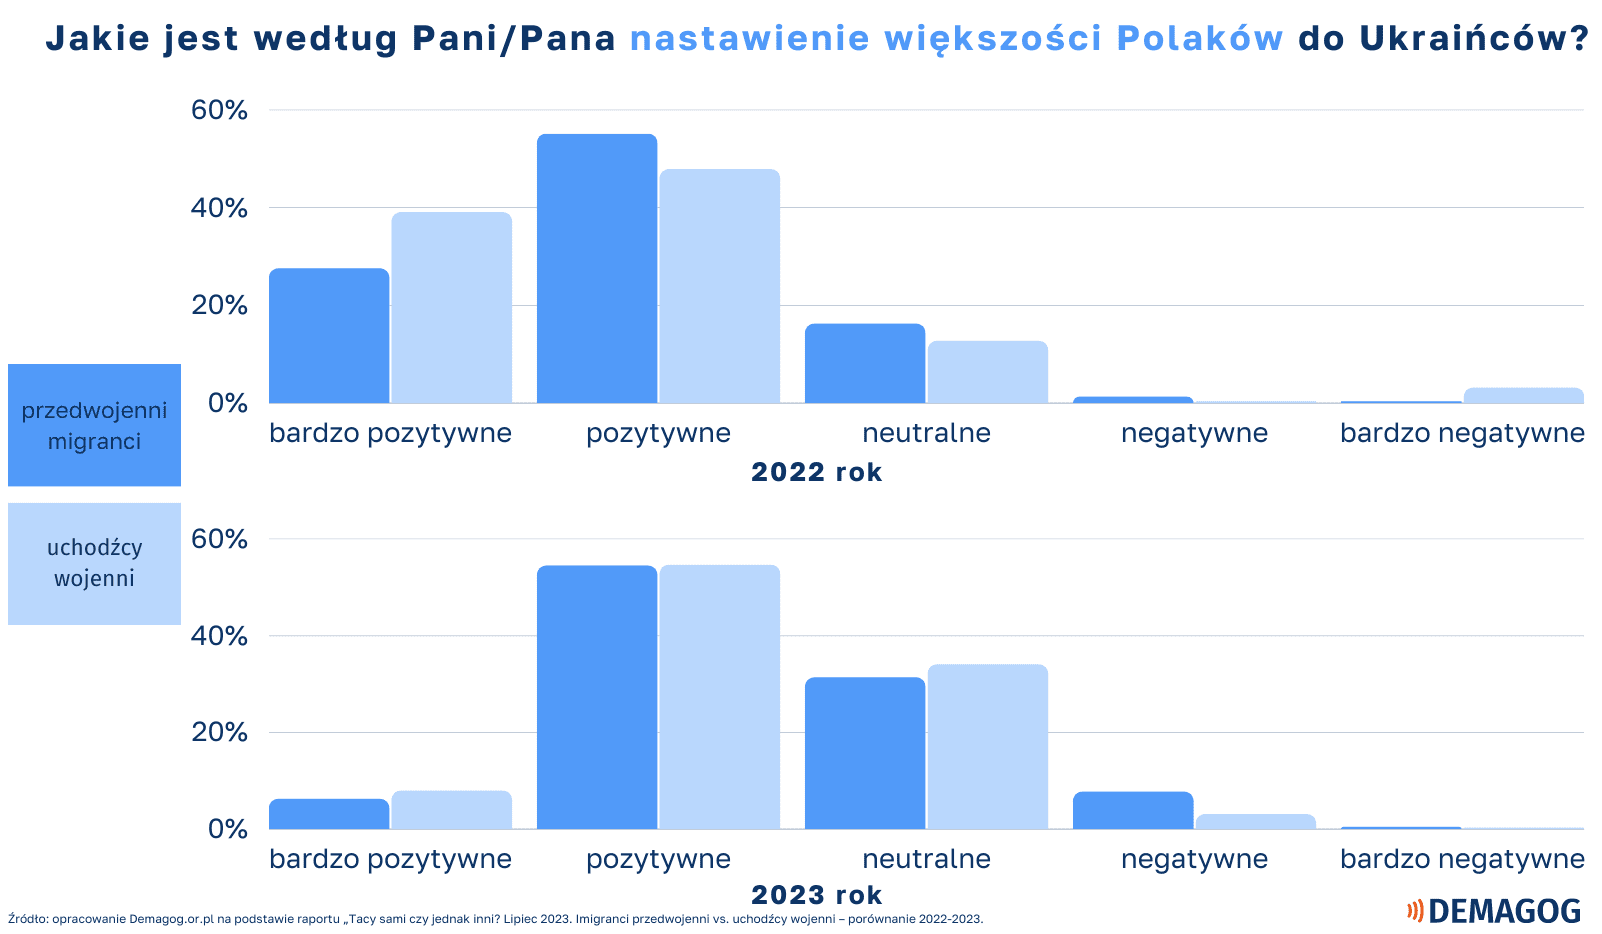 ALT Wykresy pokazujące, jak zdaniem Ukraińców wygląda nastawienie większości Polaków do nich.